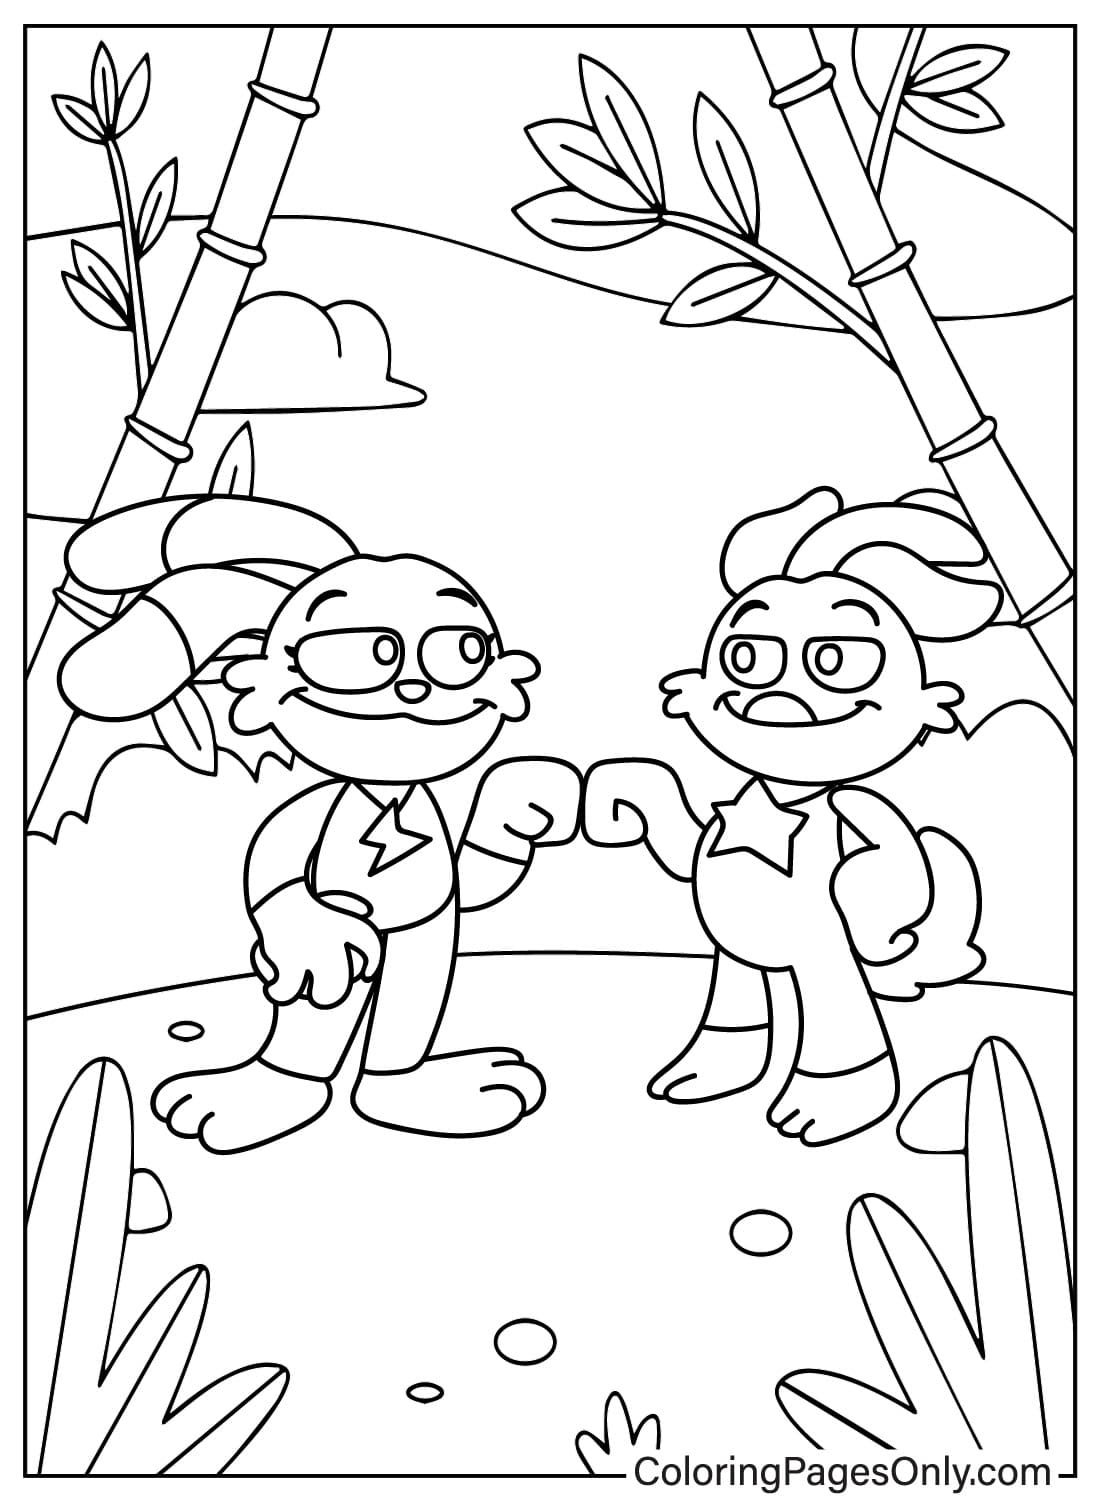 Página para colorir de KickinChicken e Hoppy Hopscotch de Smiling Critters